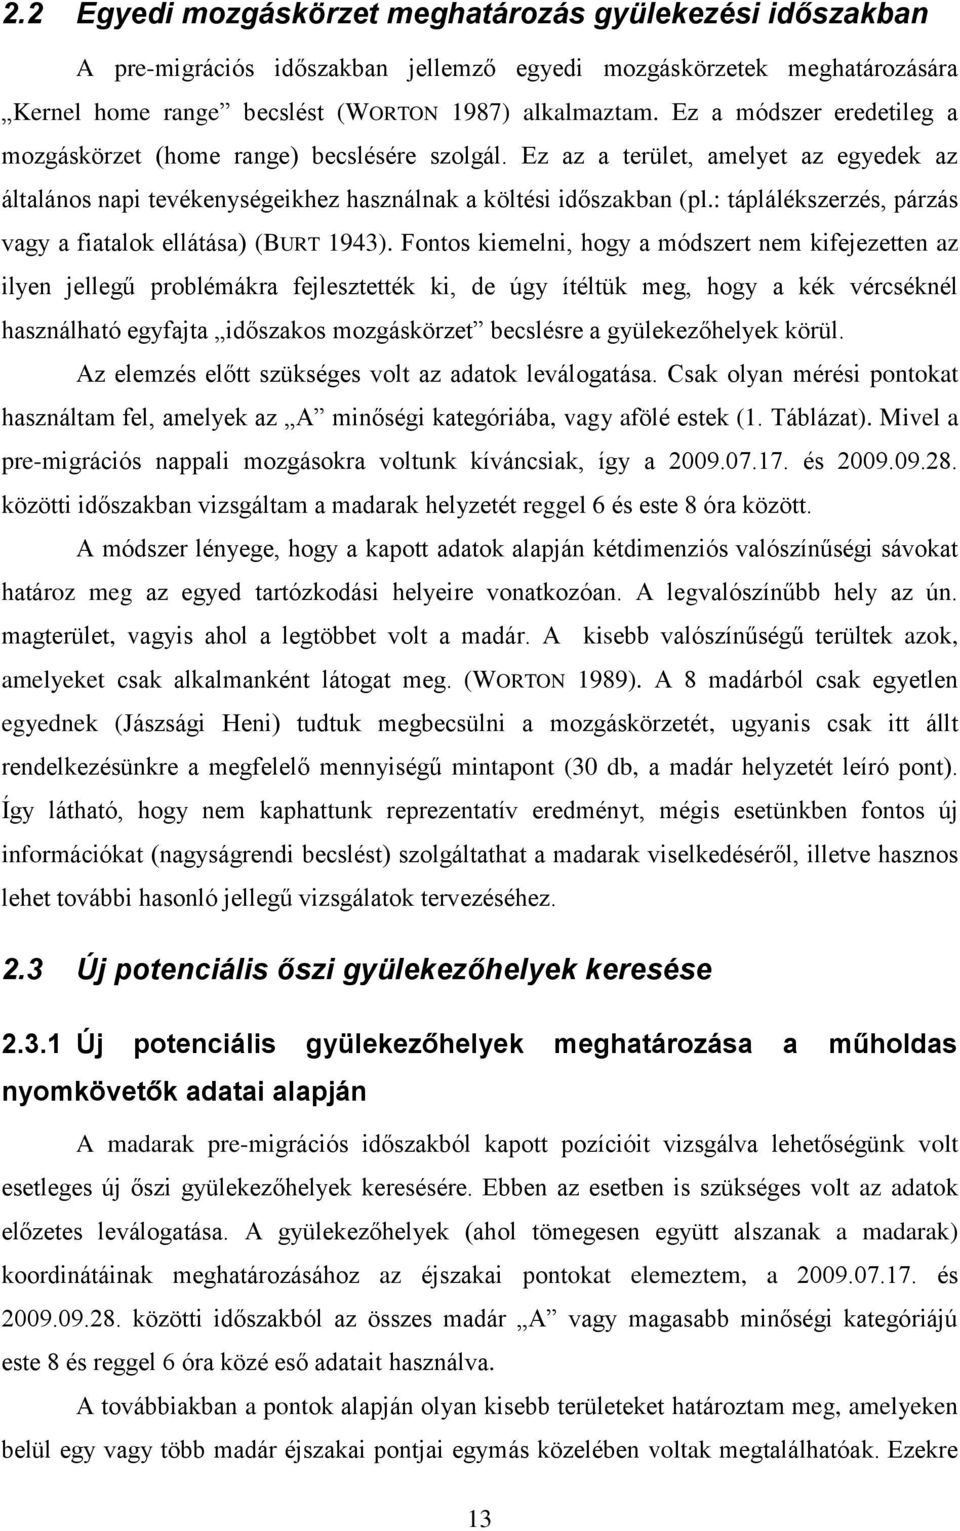 Szent István Egyetem Állatorvos-tudományi Kar Biomatematikai és  Számítástechnikai Tanszék - PDF Ingyenes letöltés